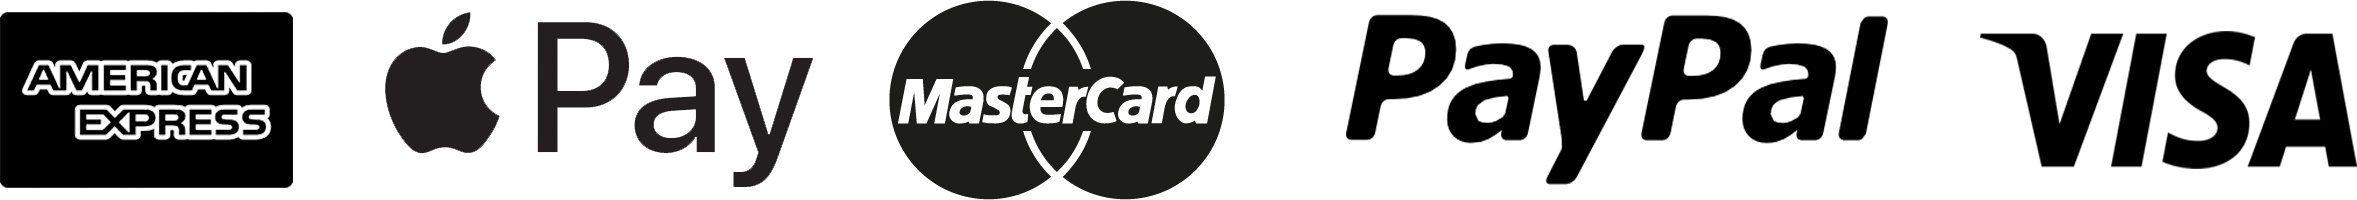 PayPal Visa MasterCard Logo - PAYMENTS & RETURNS